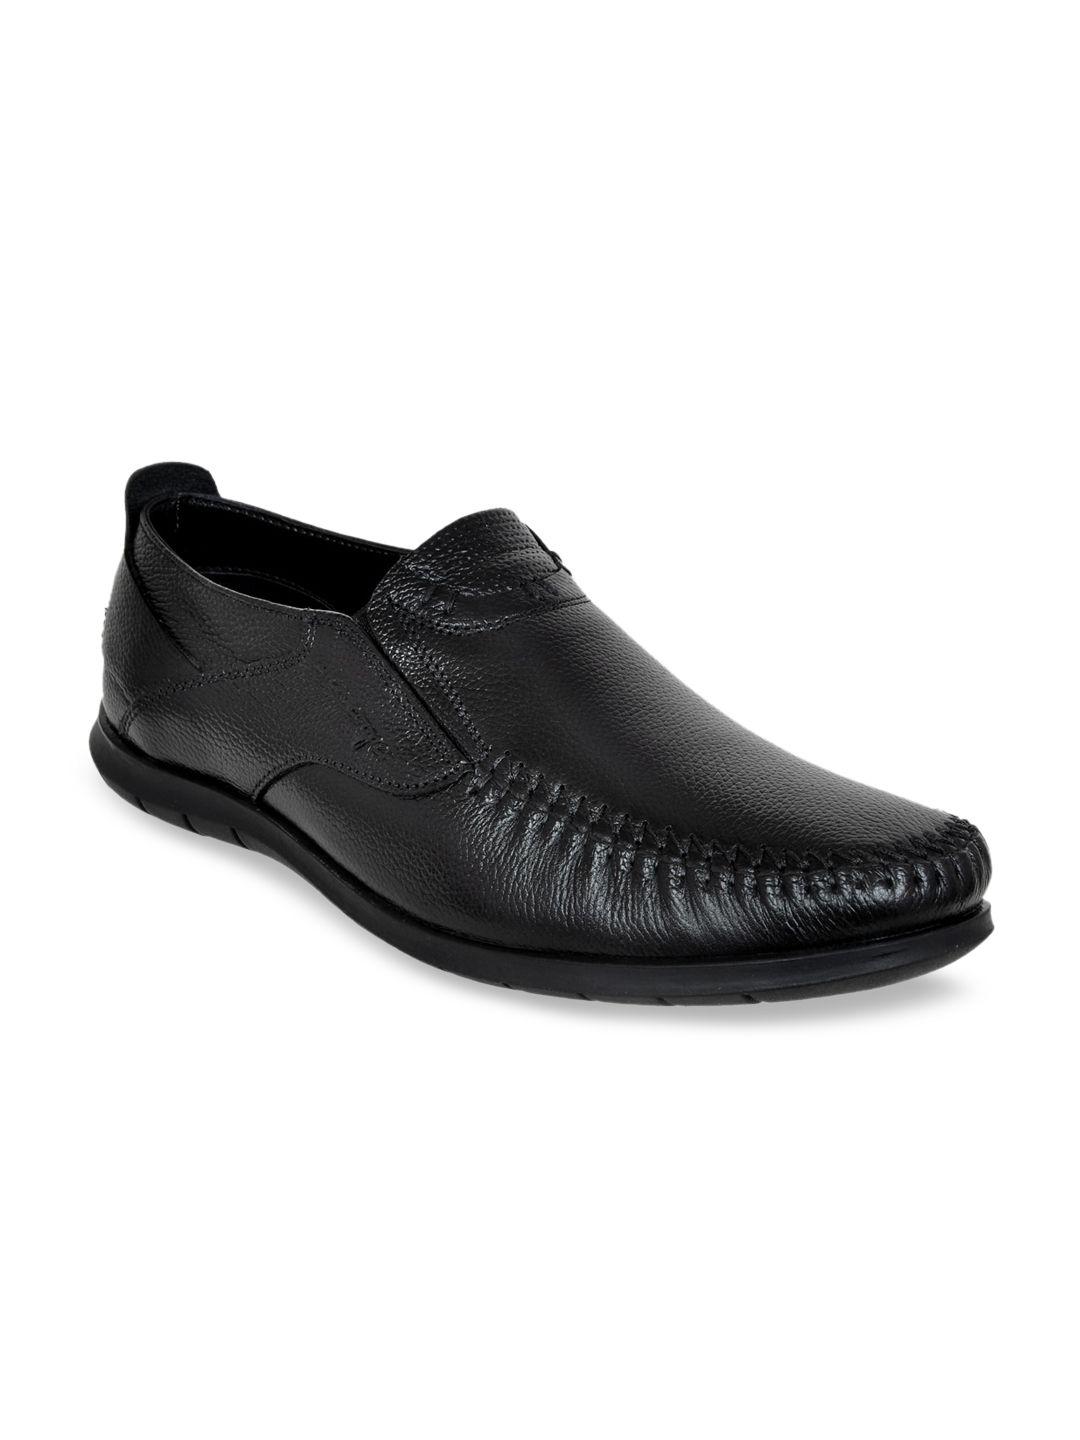 allen cooper men black textured leather slip-on formal shoes